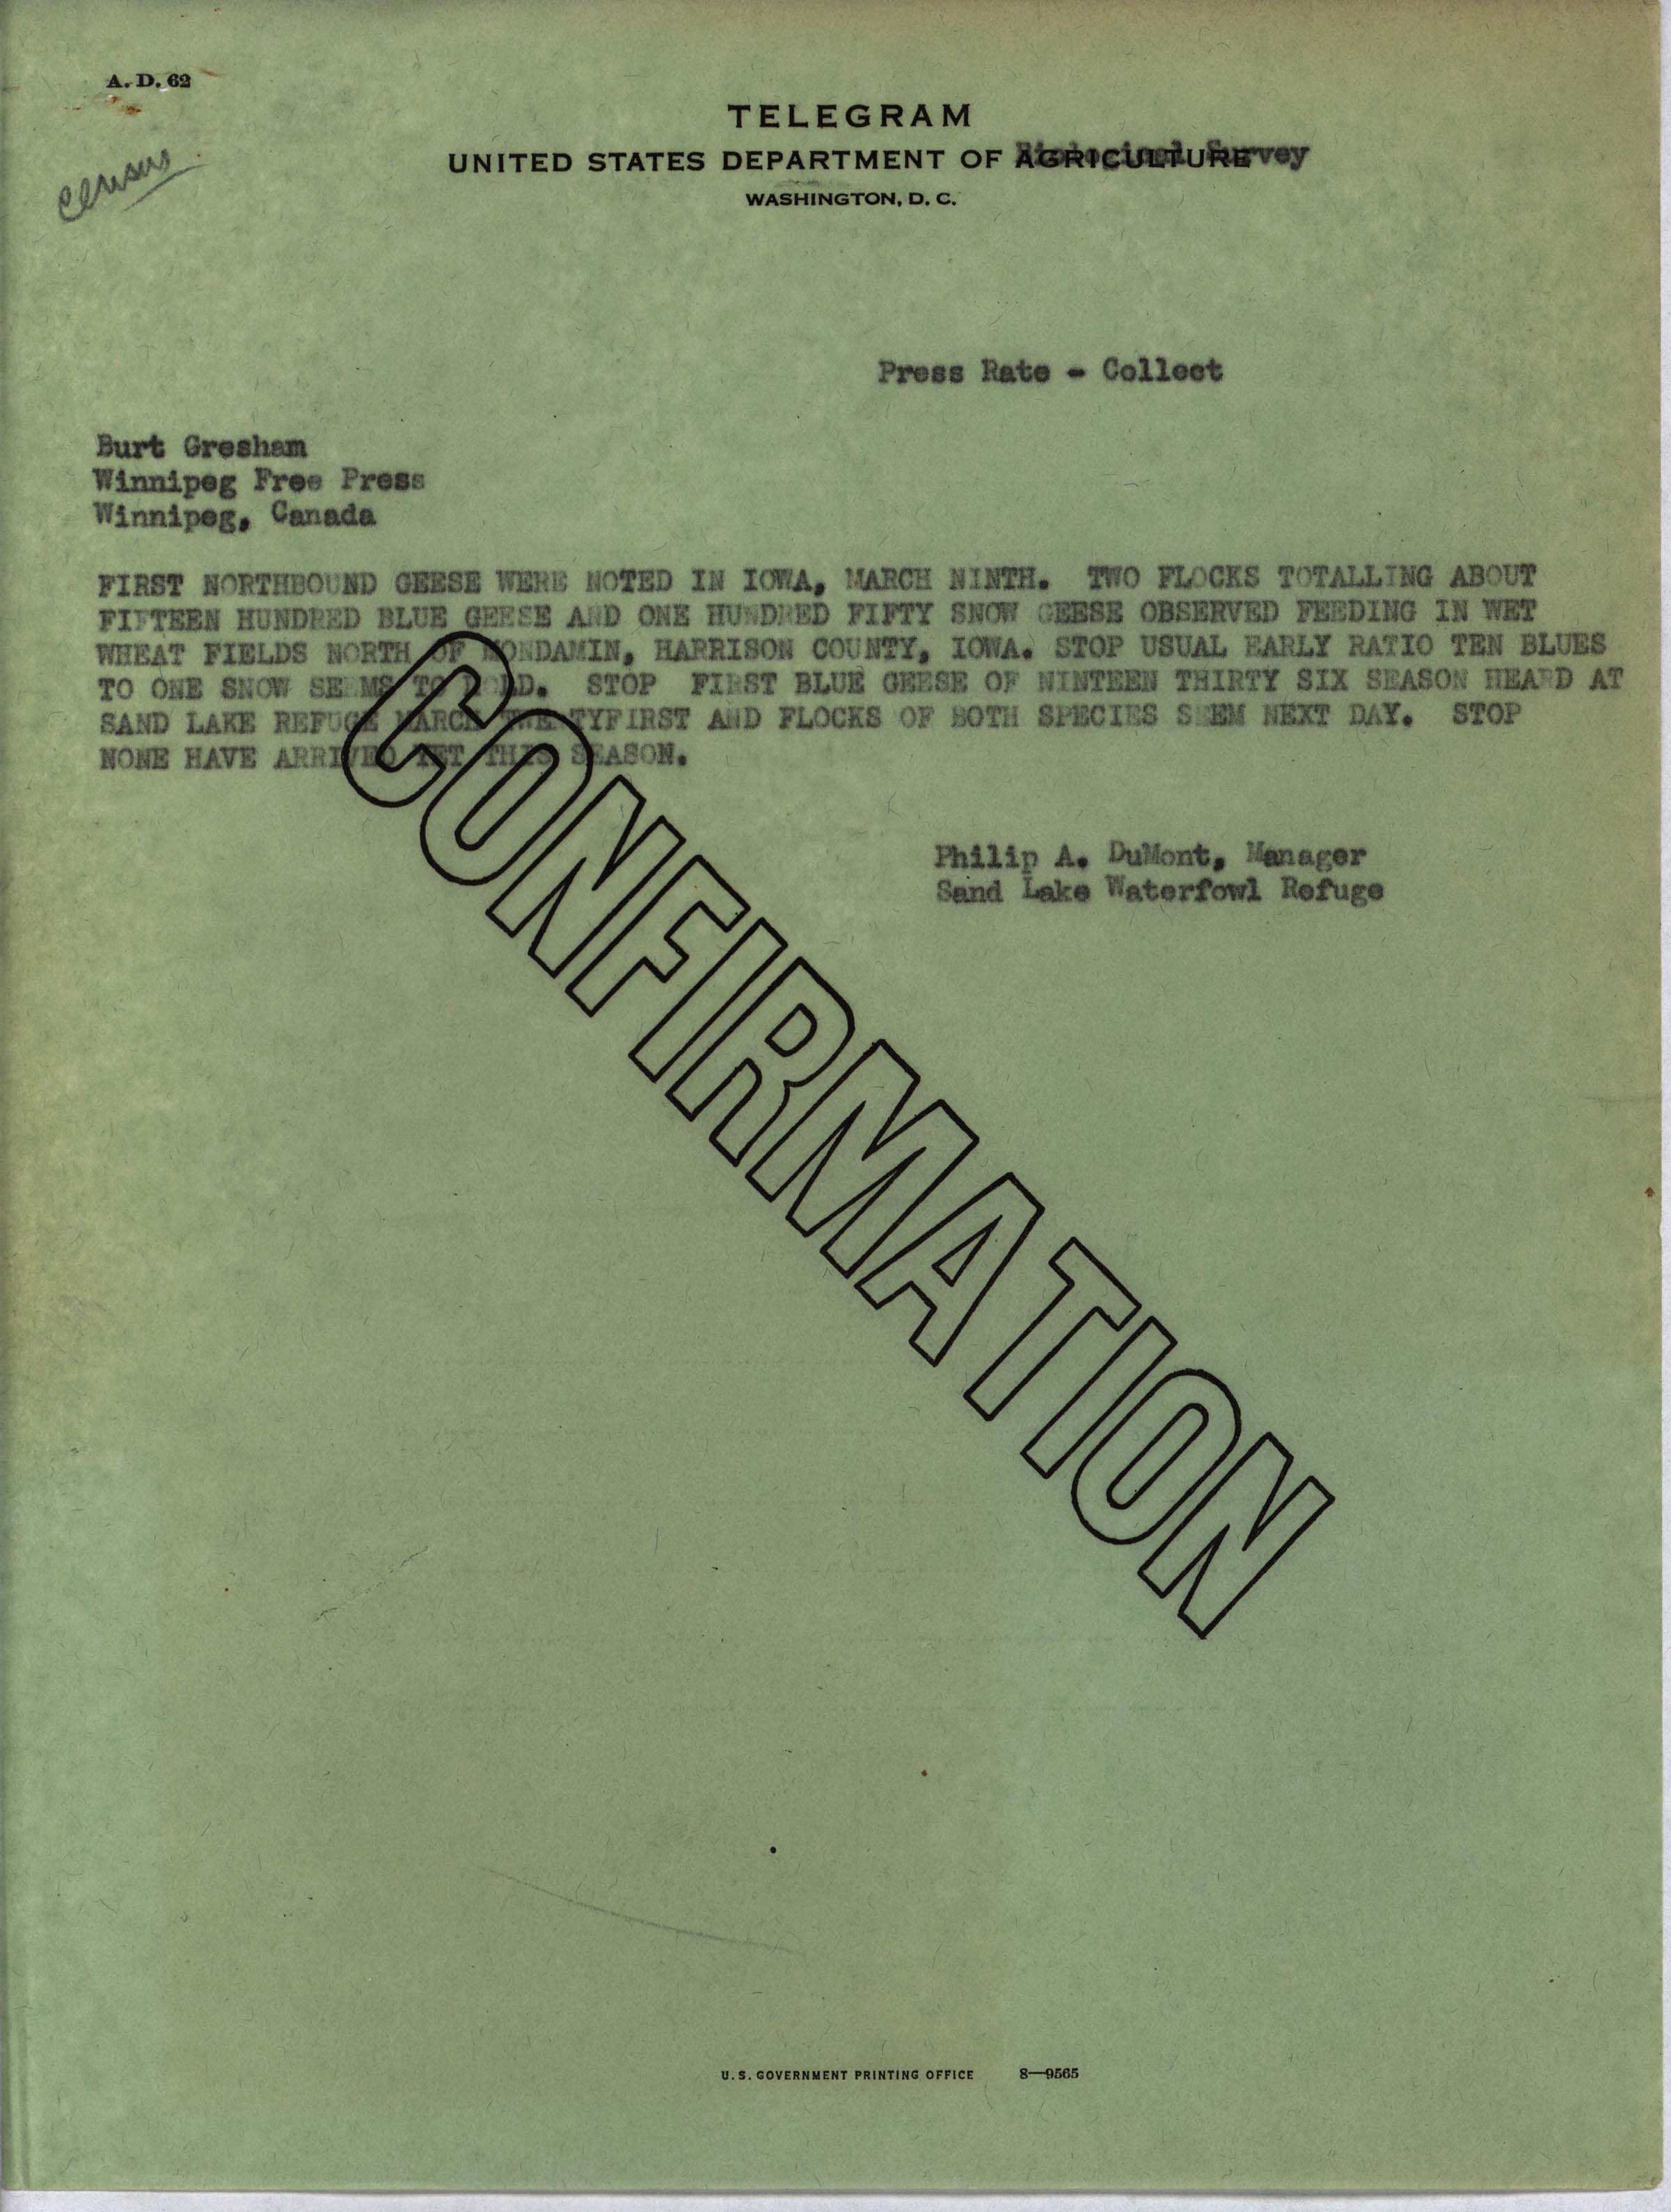 Philip DuMont telegram to Burt Gresham regarding Goose migration